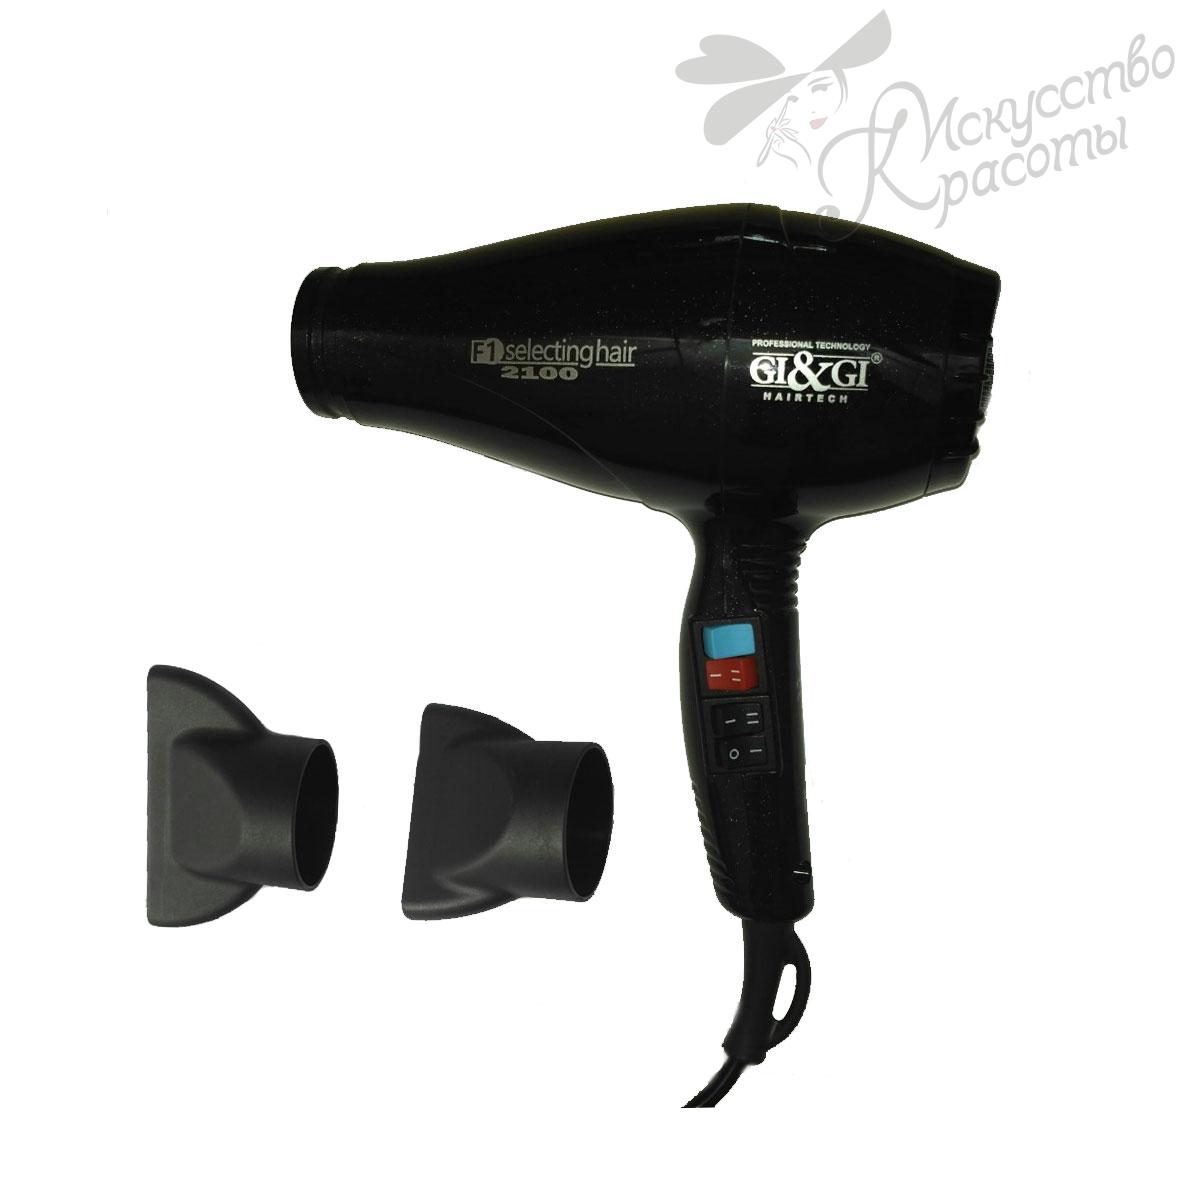 Профессиональный фен для волос F1 Selectinghair Cizeta Pro